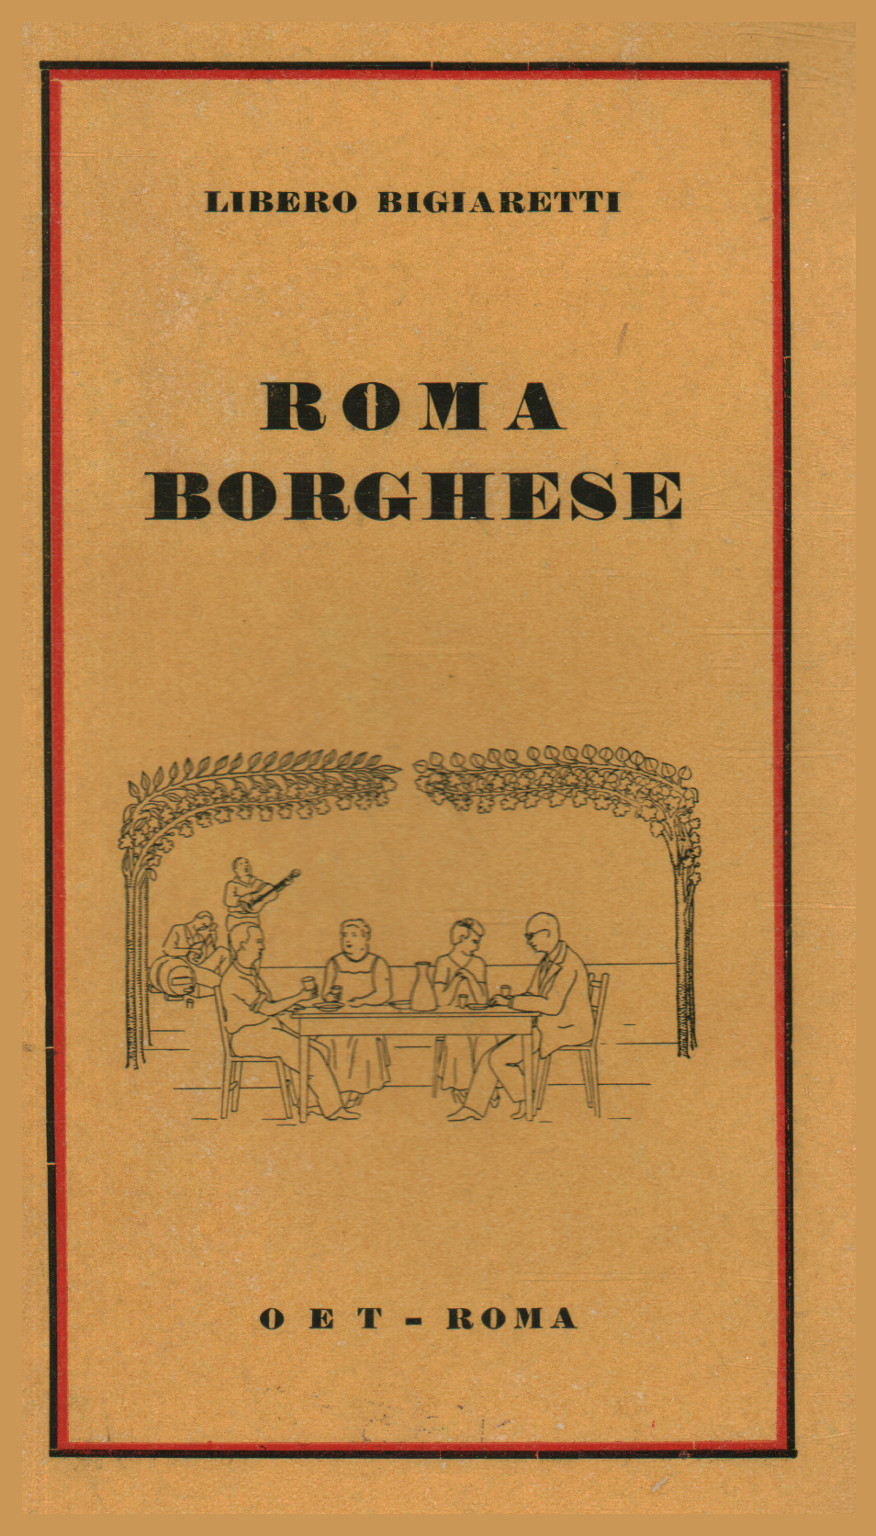 Roma borghese, s.a.